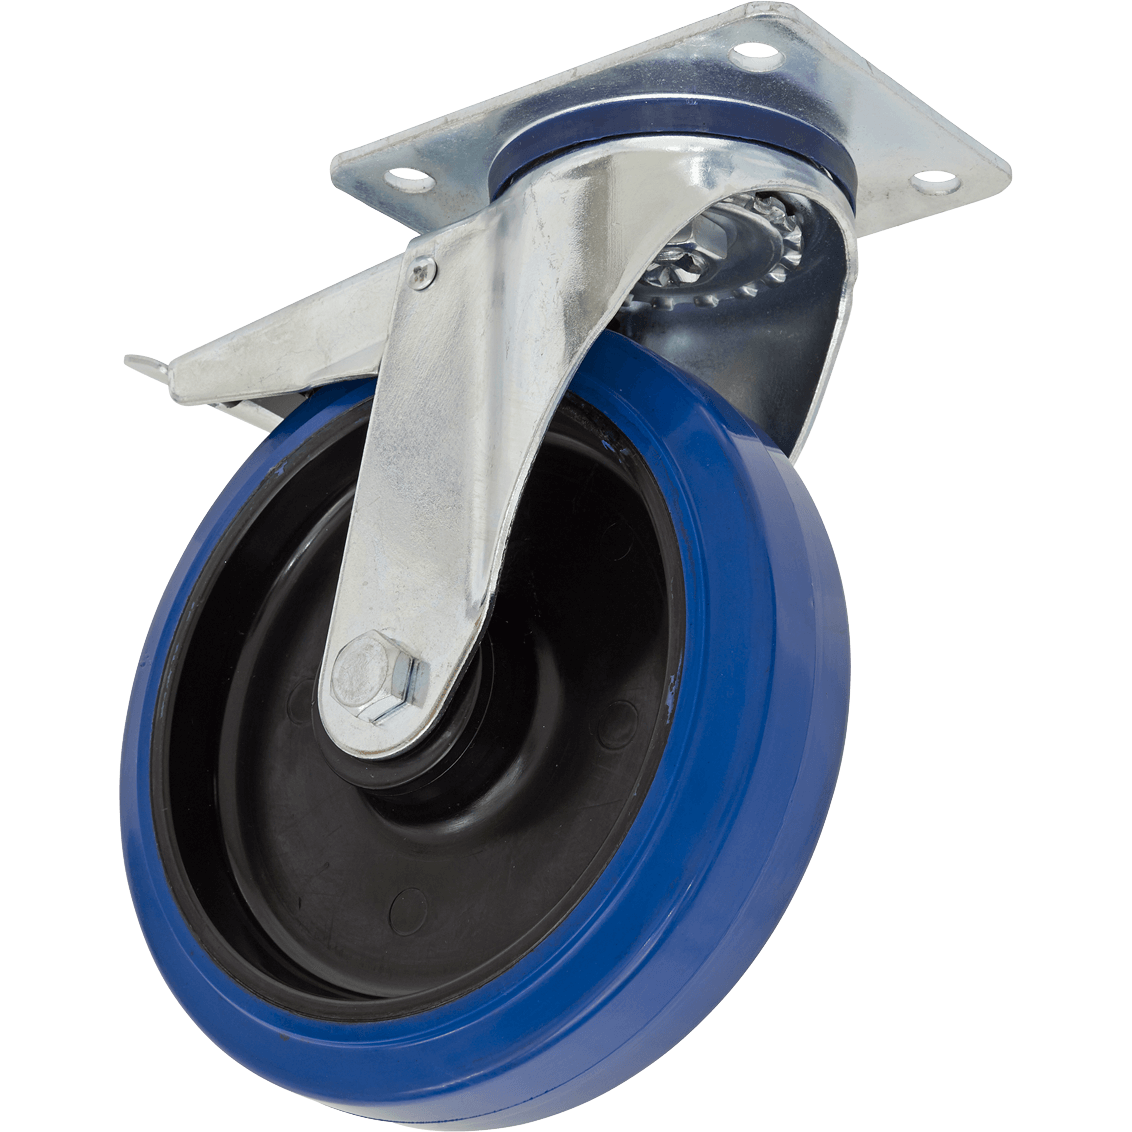 Sealey Heavy-Duty Blue Elastic Rubber Swivel Castor Wheel and Total Lock 100mm